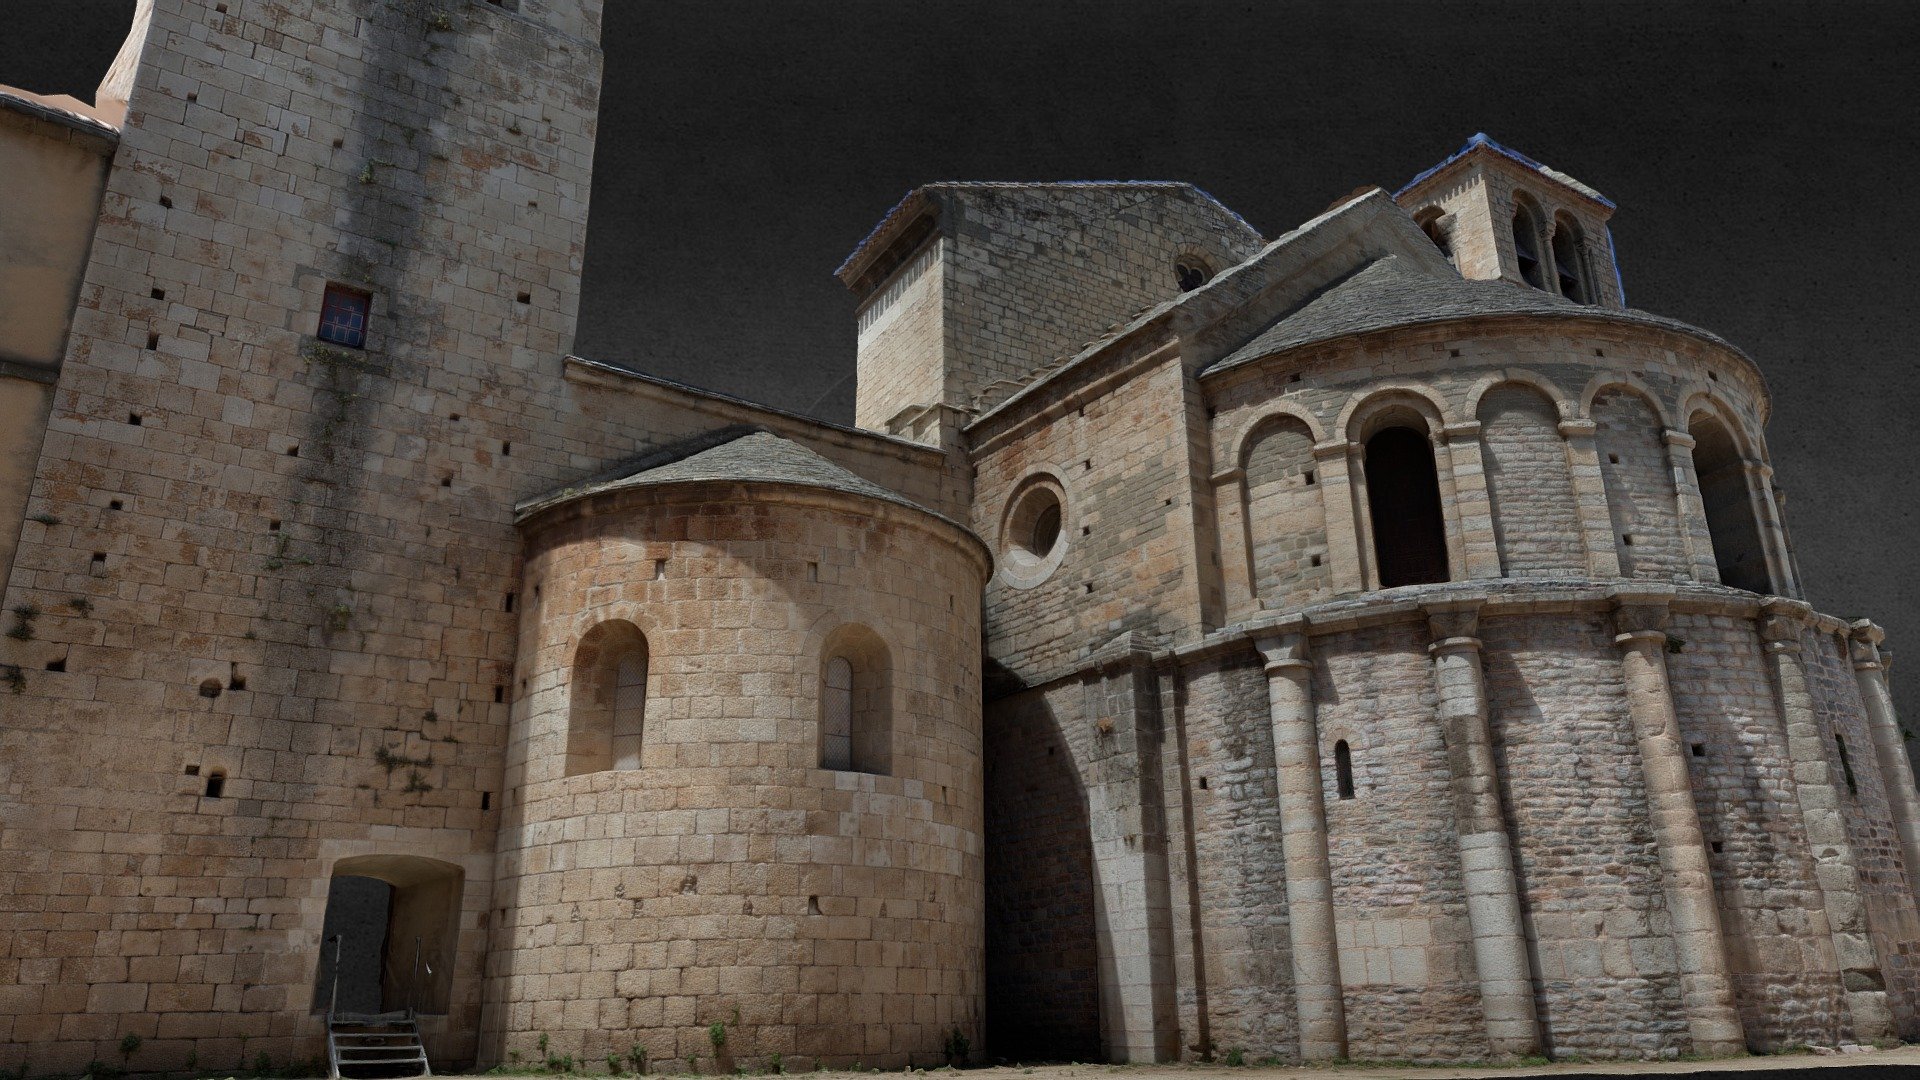 Chevet roman de l'abbaye de Caunes-Minervois. 

&ldquo;L’Abbaye de Caunes-Minervois traverse le temps, depuis son fameux chevet roman jusqu’au cloître mauriste. On y visite également les vestiges archéologiques du cloître médiéval et de l’église carolingienne fondée en 790&hellip;